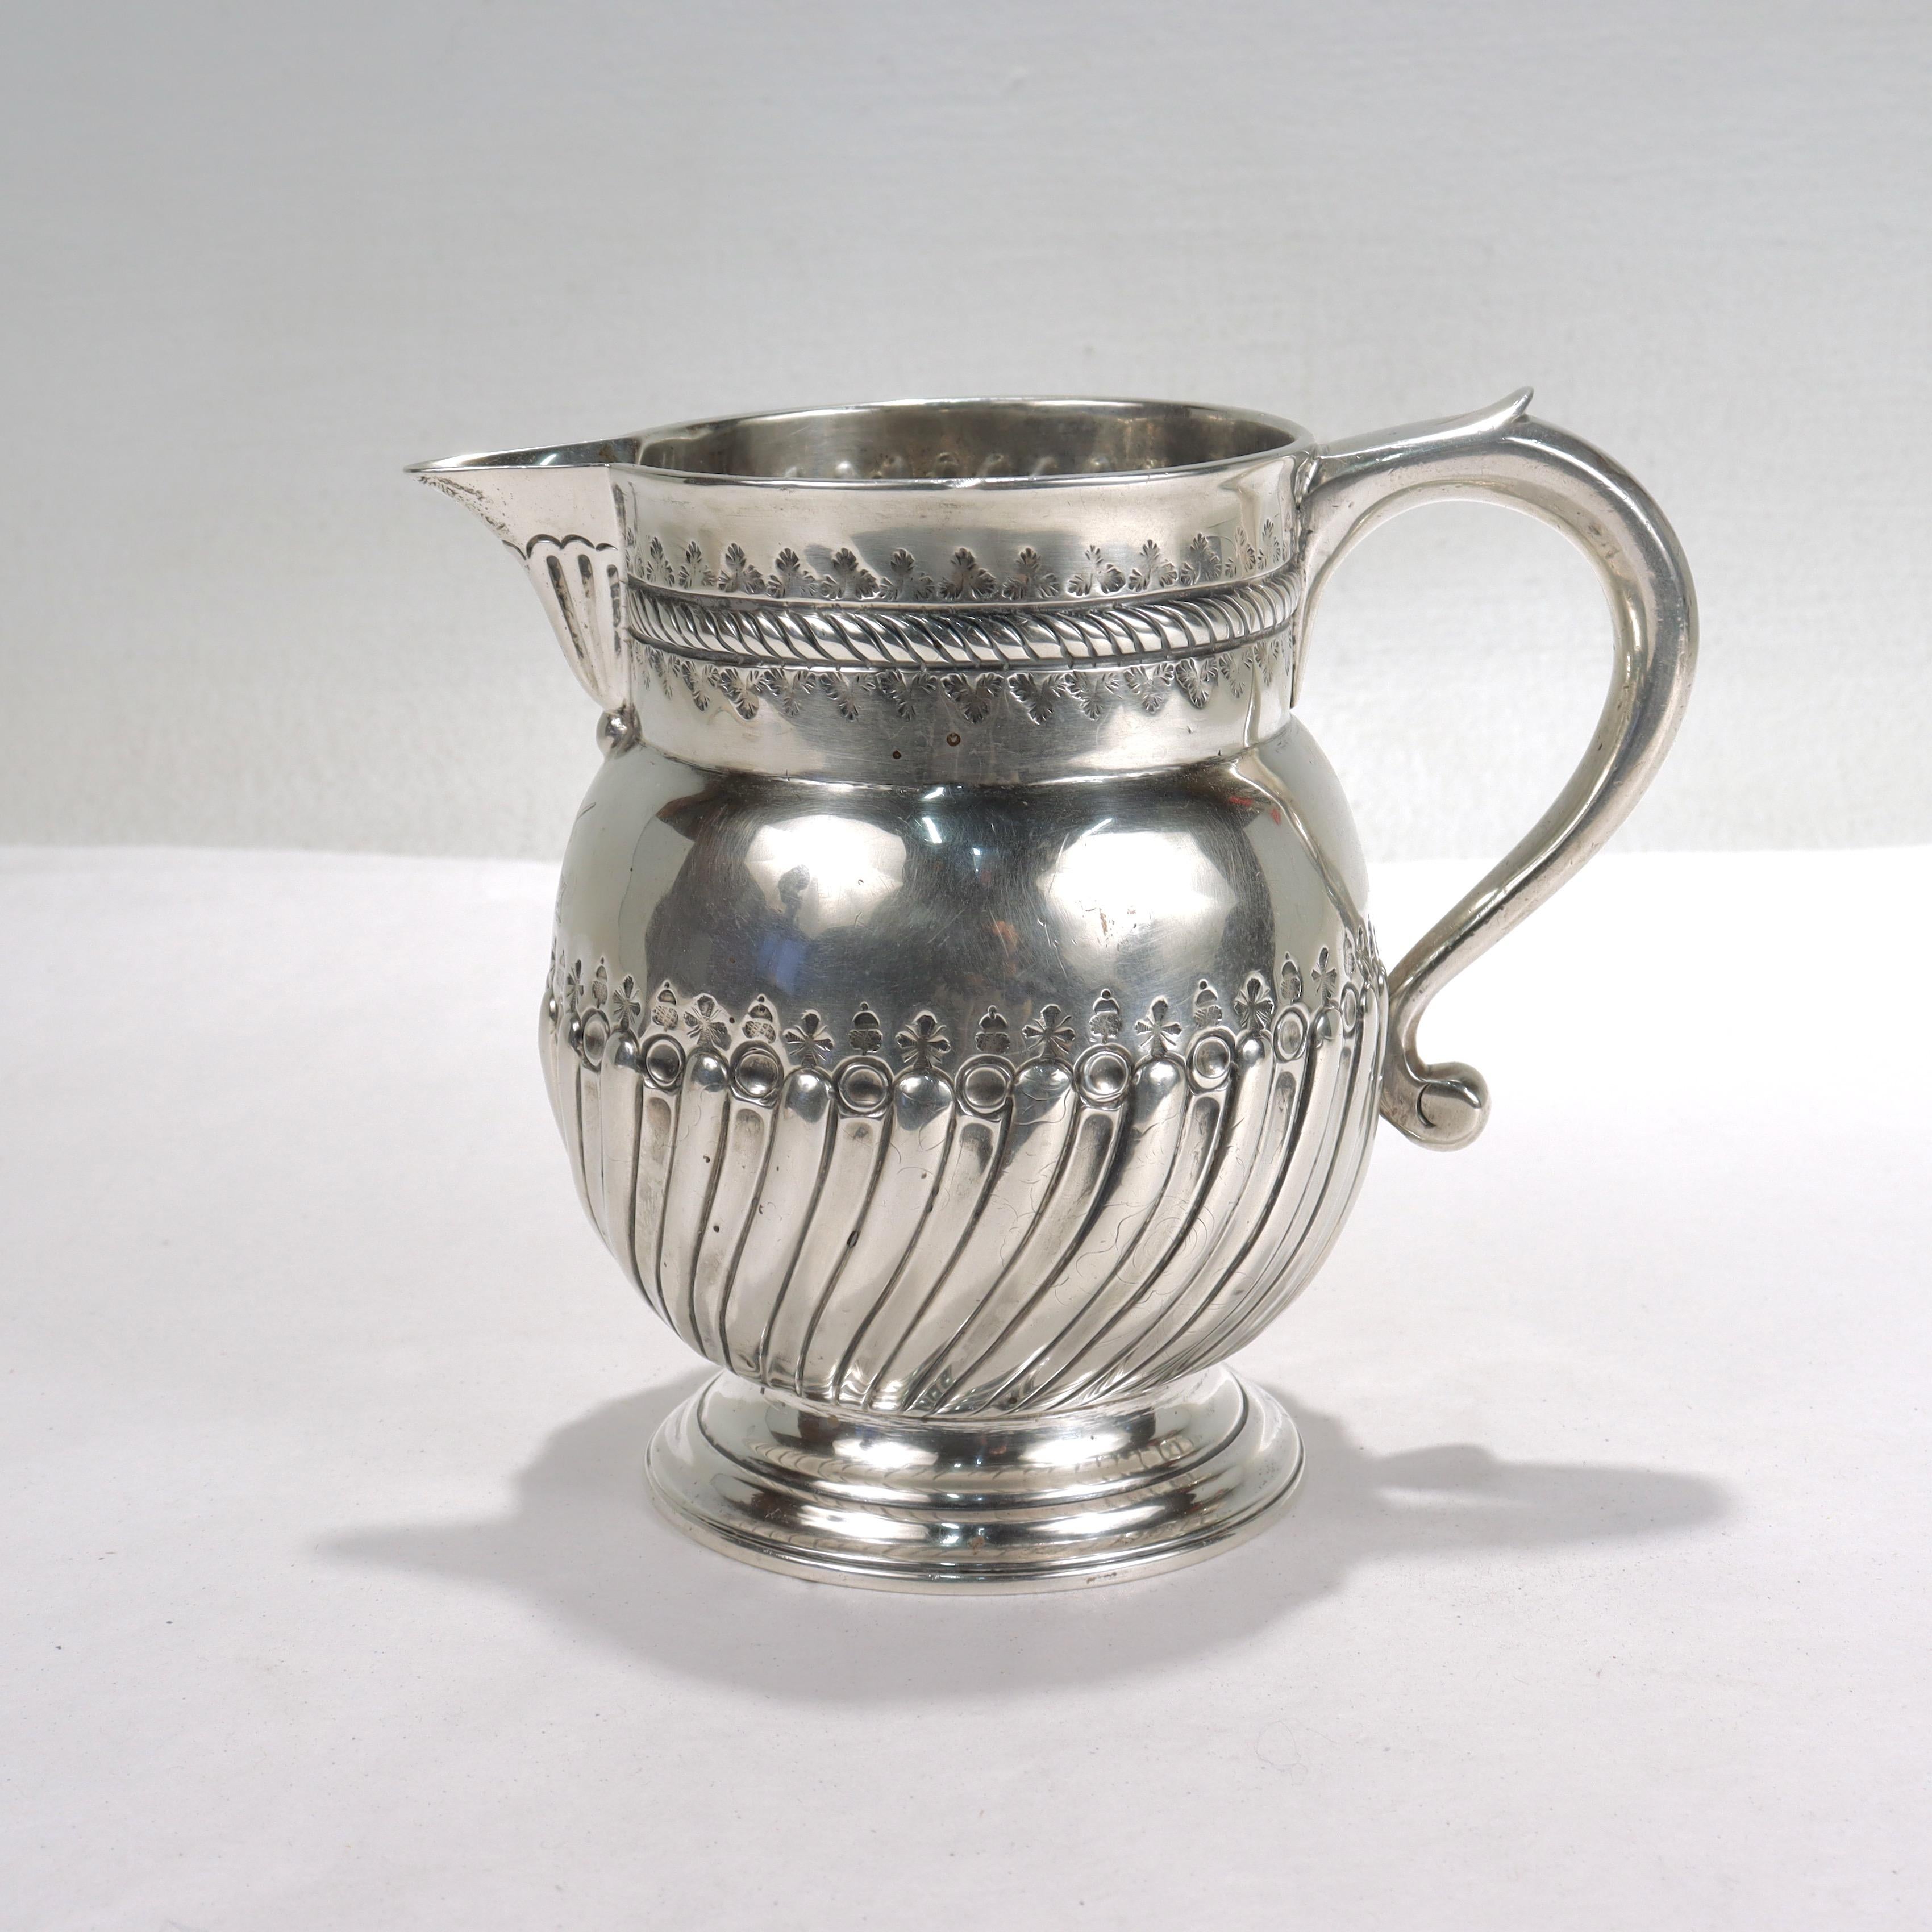 Eine feine antike, frühe 18. Jahrhundert Englisch Silber Milchkännchen.

In Britannia Silber.

Hergestellt von Nathaniel Gulliver.

Der Krug hat eine Punzierung mit sich wiederholenden Kleeblättern auf der Oberseite und abwechselnden Eicheln und